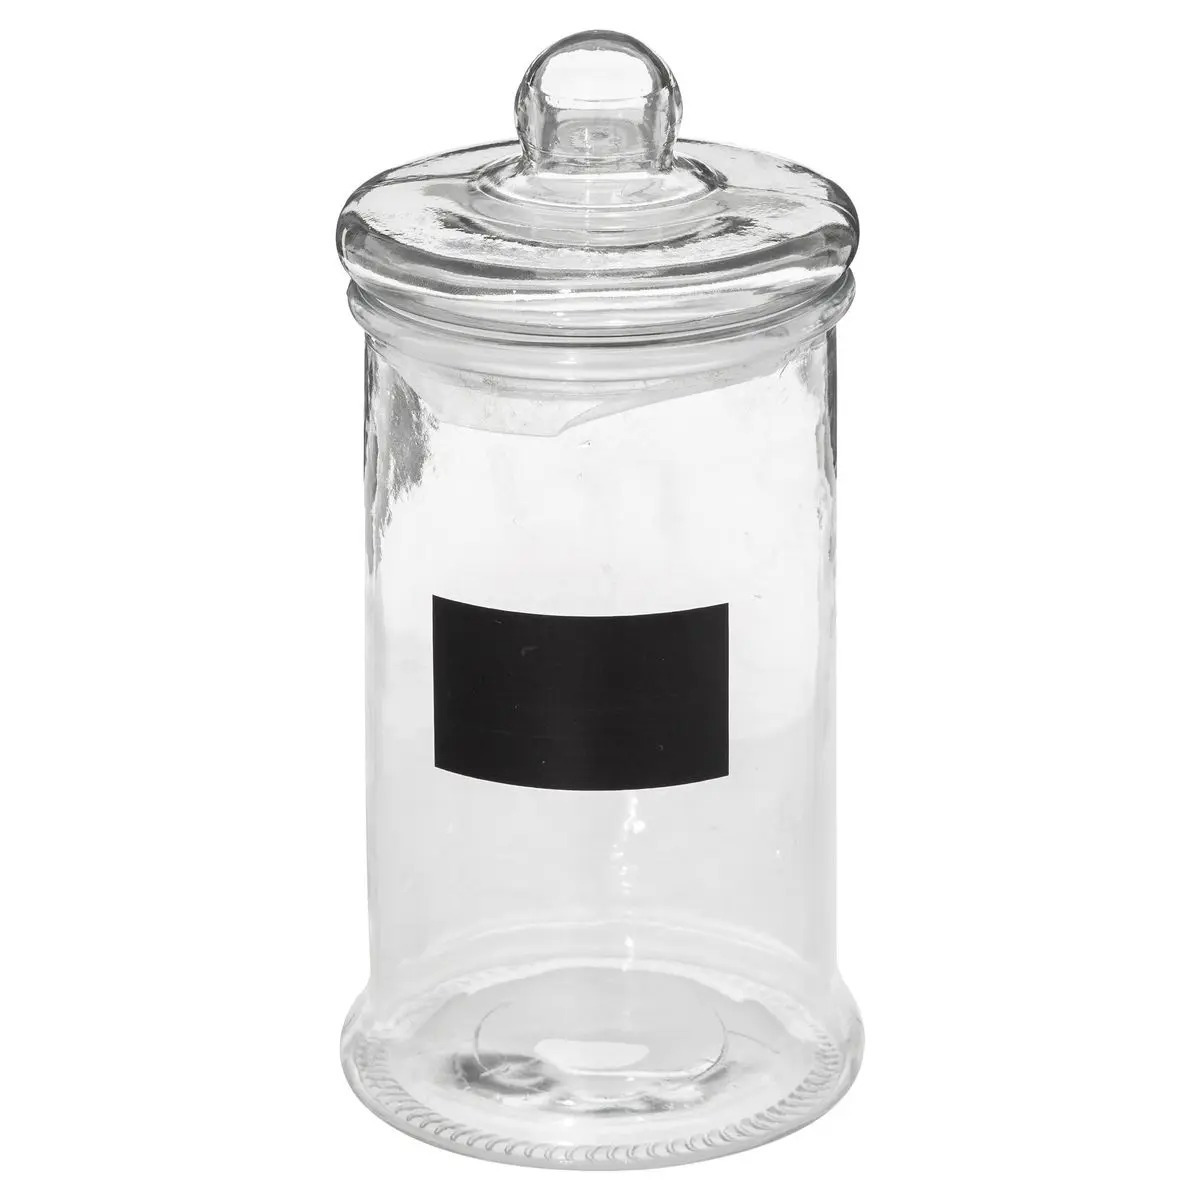 5five Snoeppot/voorraadpot 1,6L glas met deksel en krijtvlak -